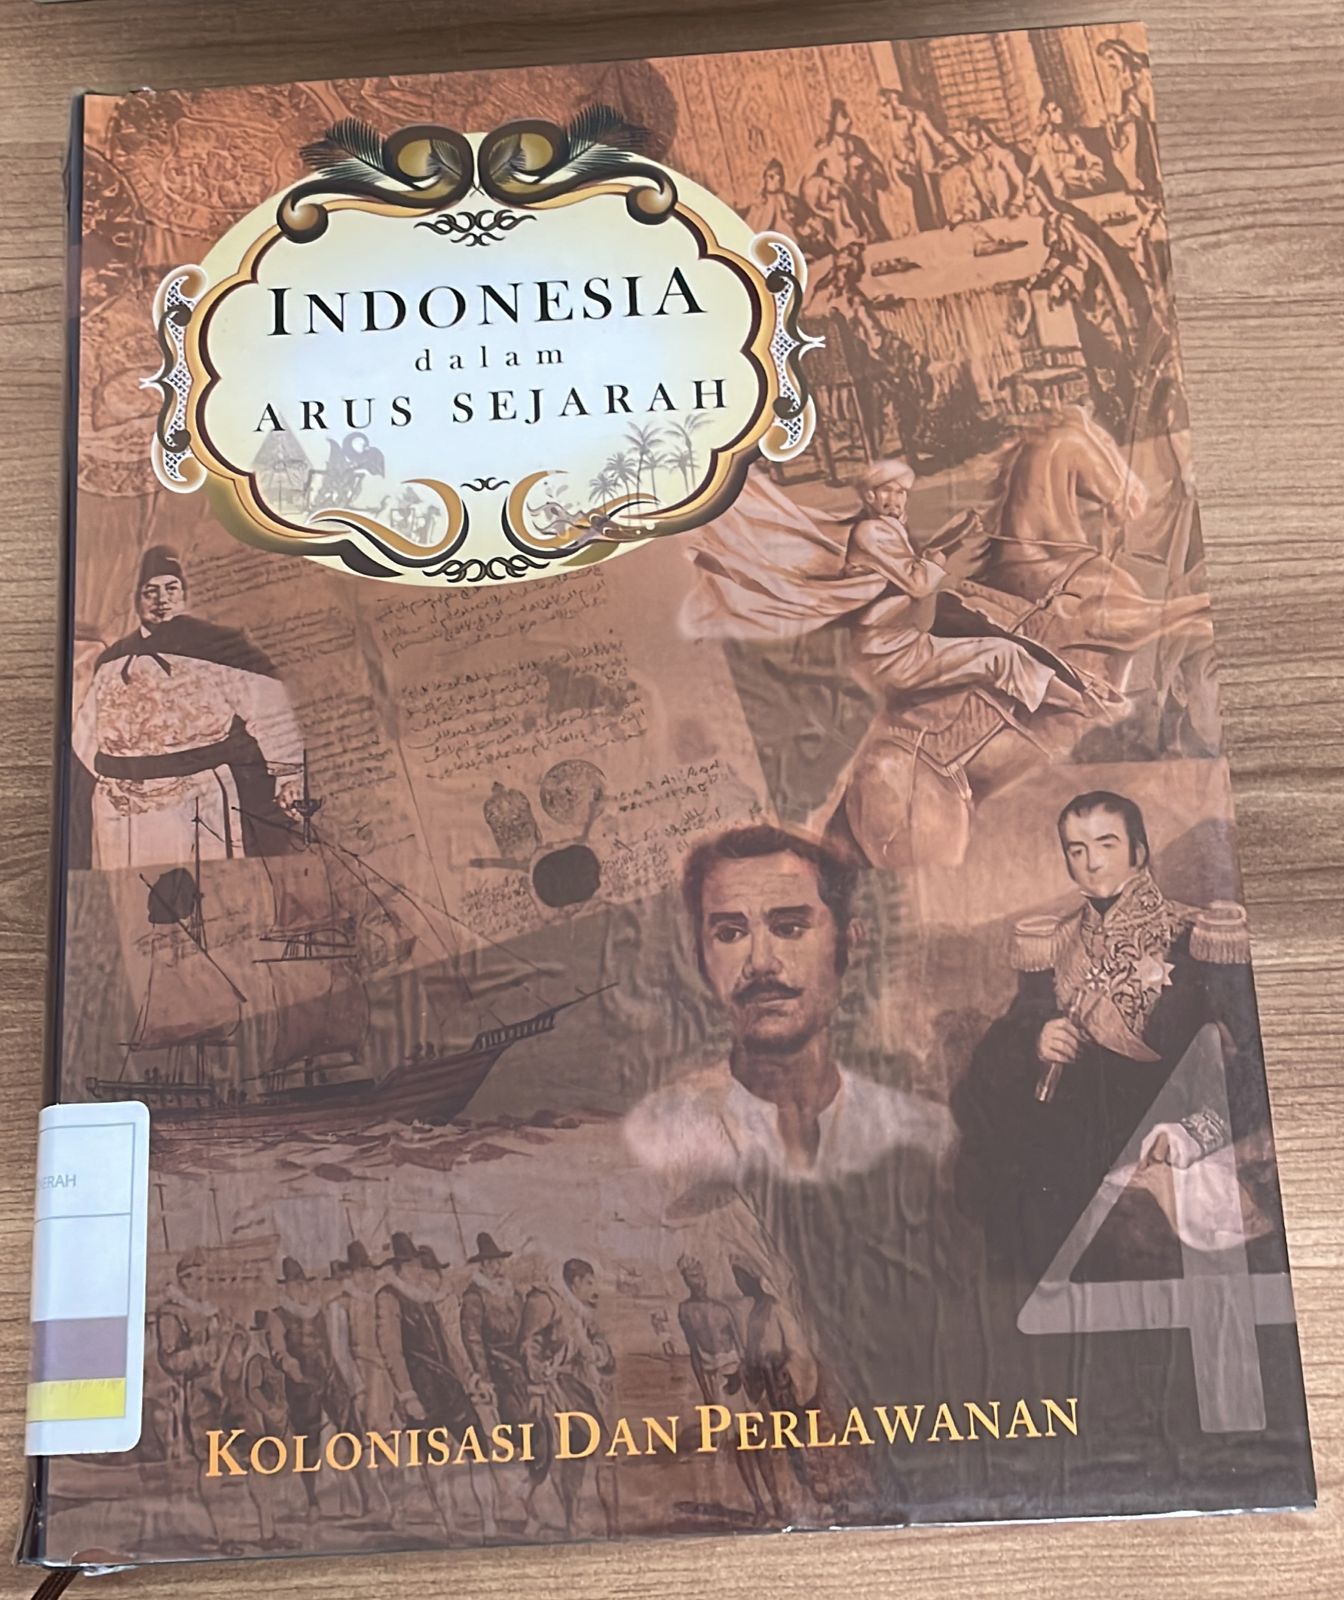 Indonesia Dalam Arus Sejarah 4 :  Kolonisasi dan Perlawanan